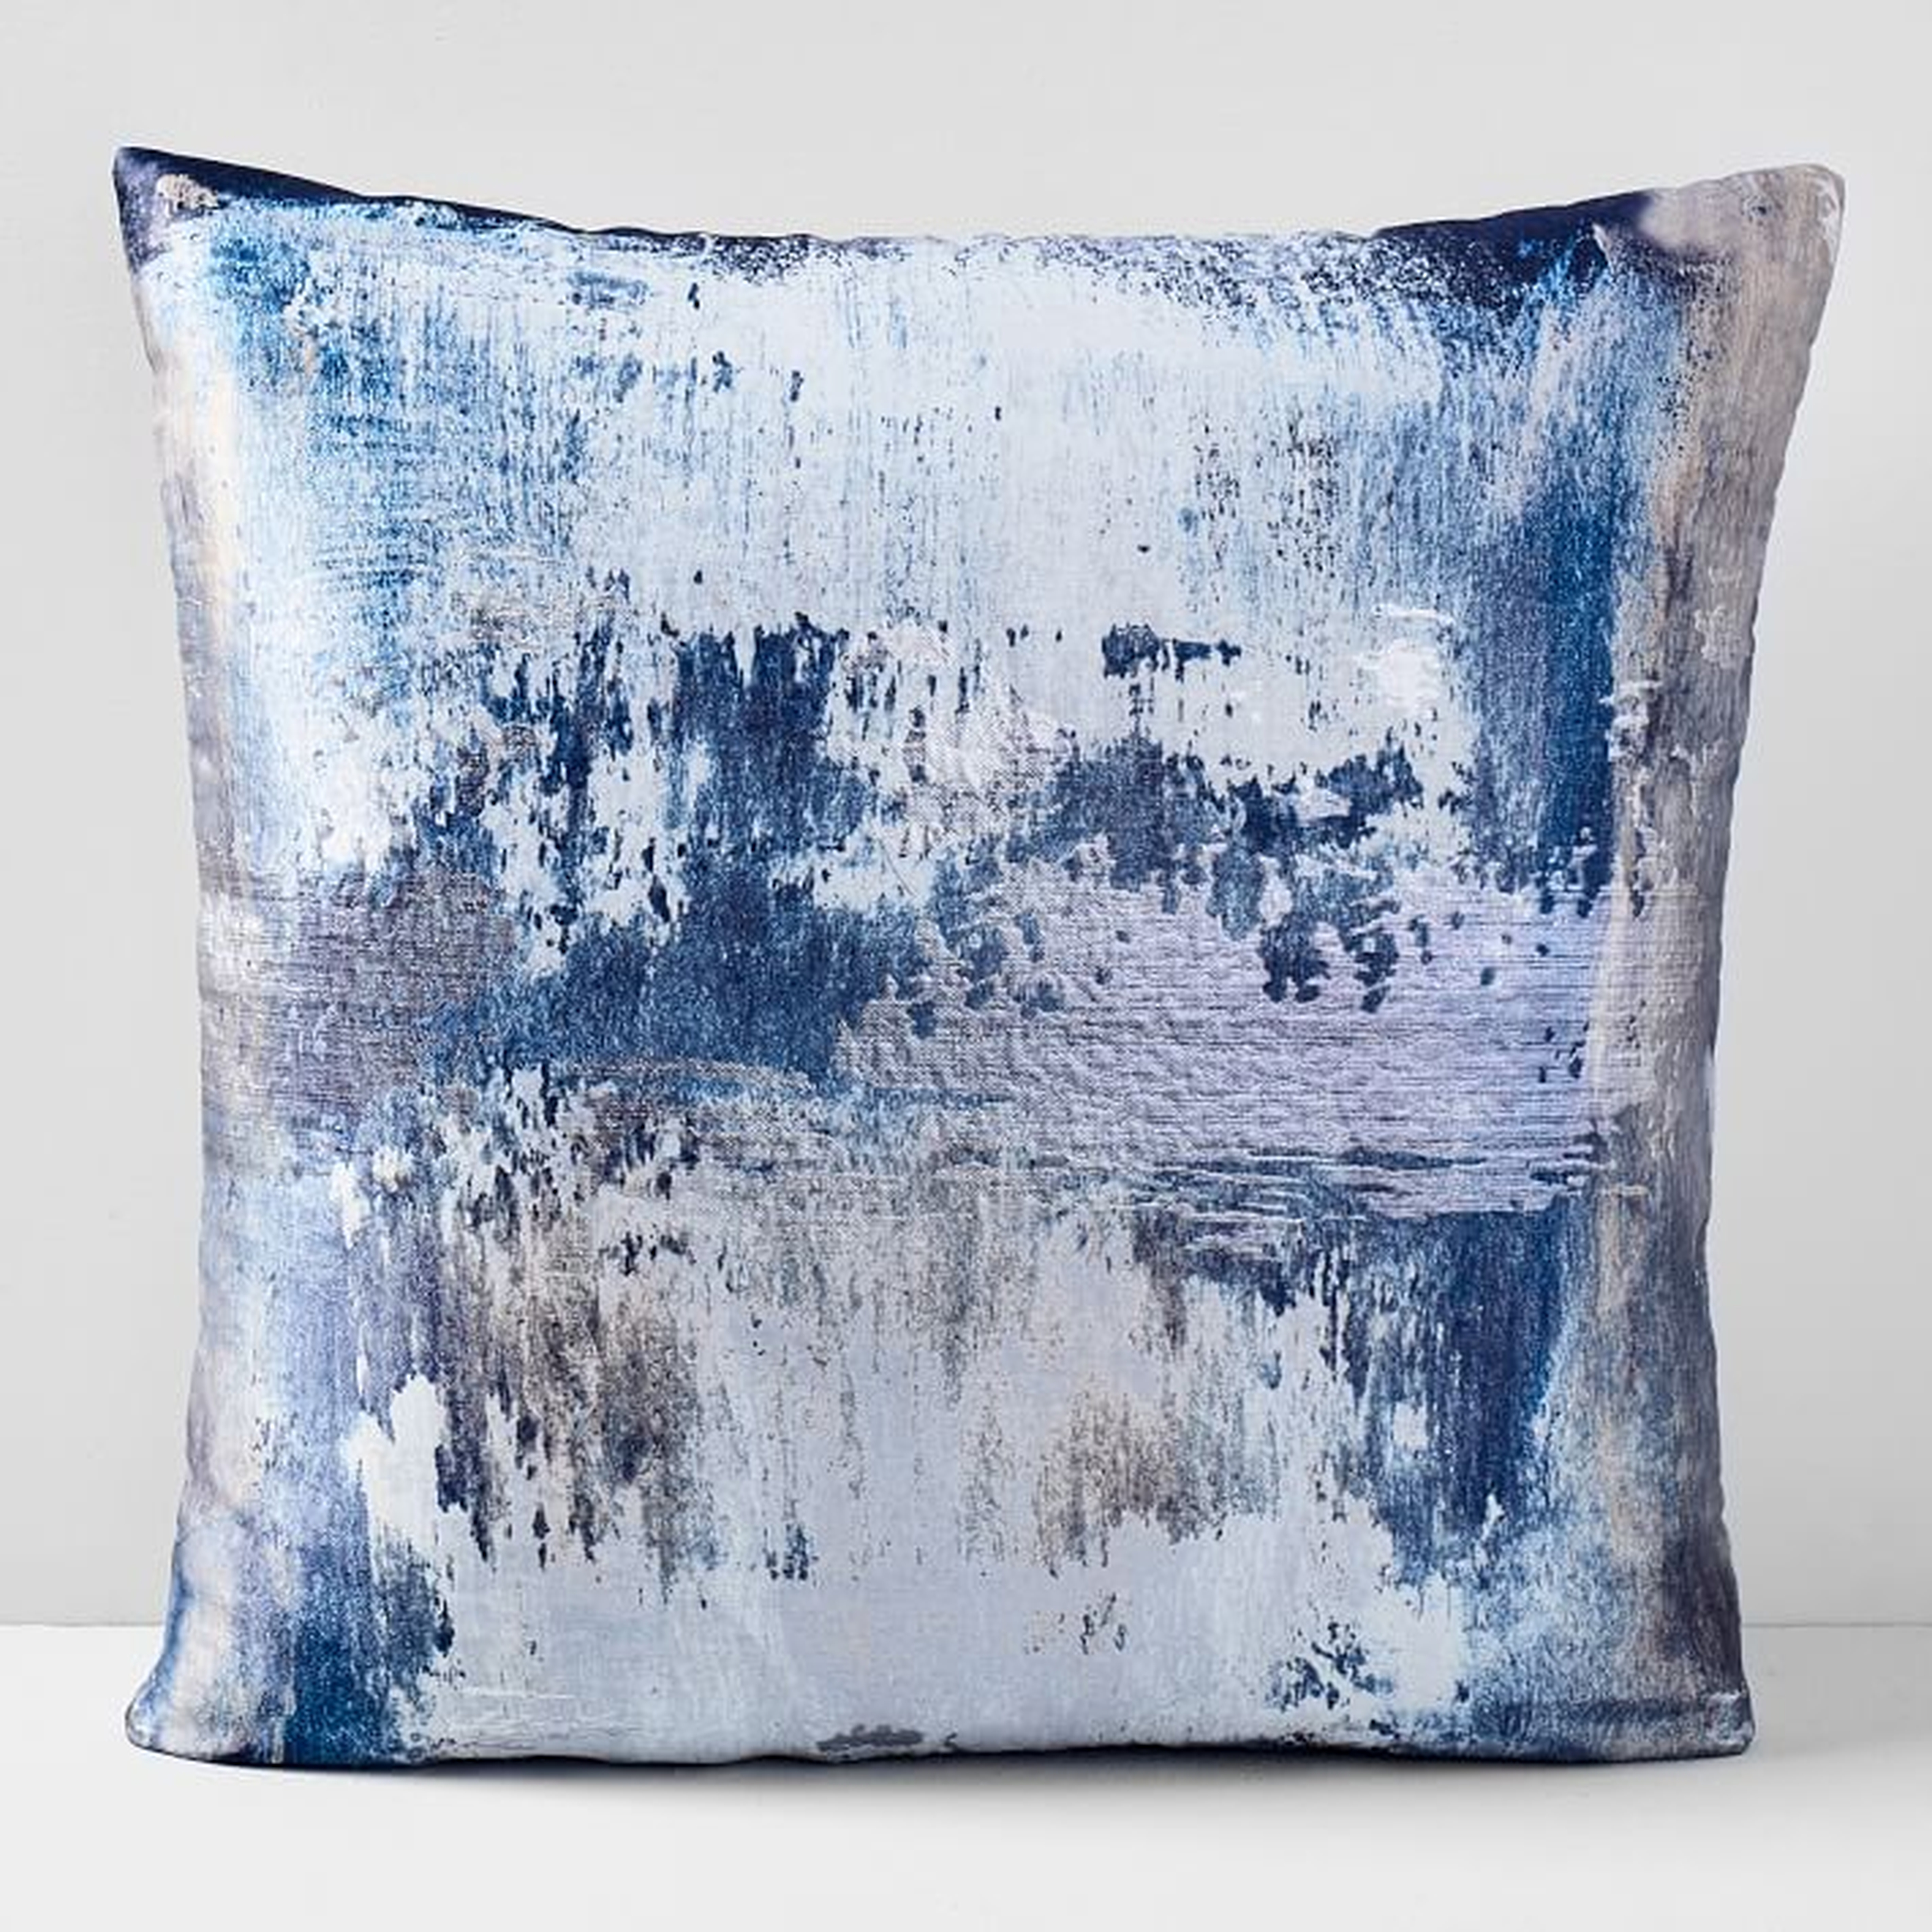 Abstract Haze Brocade Pillow Cover, 20x20 - West Elm